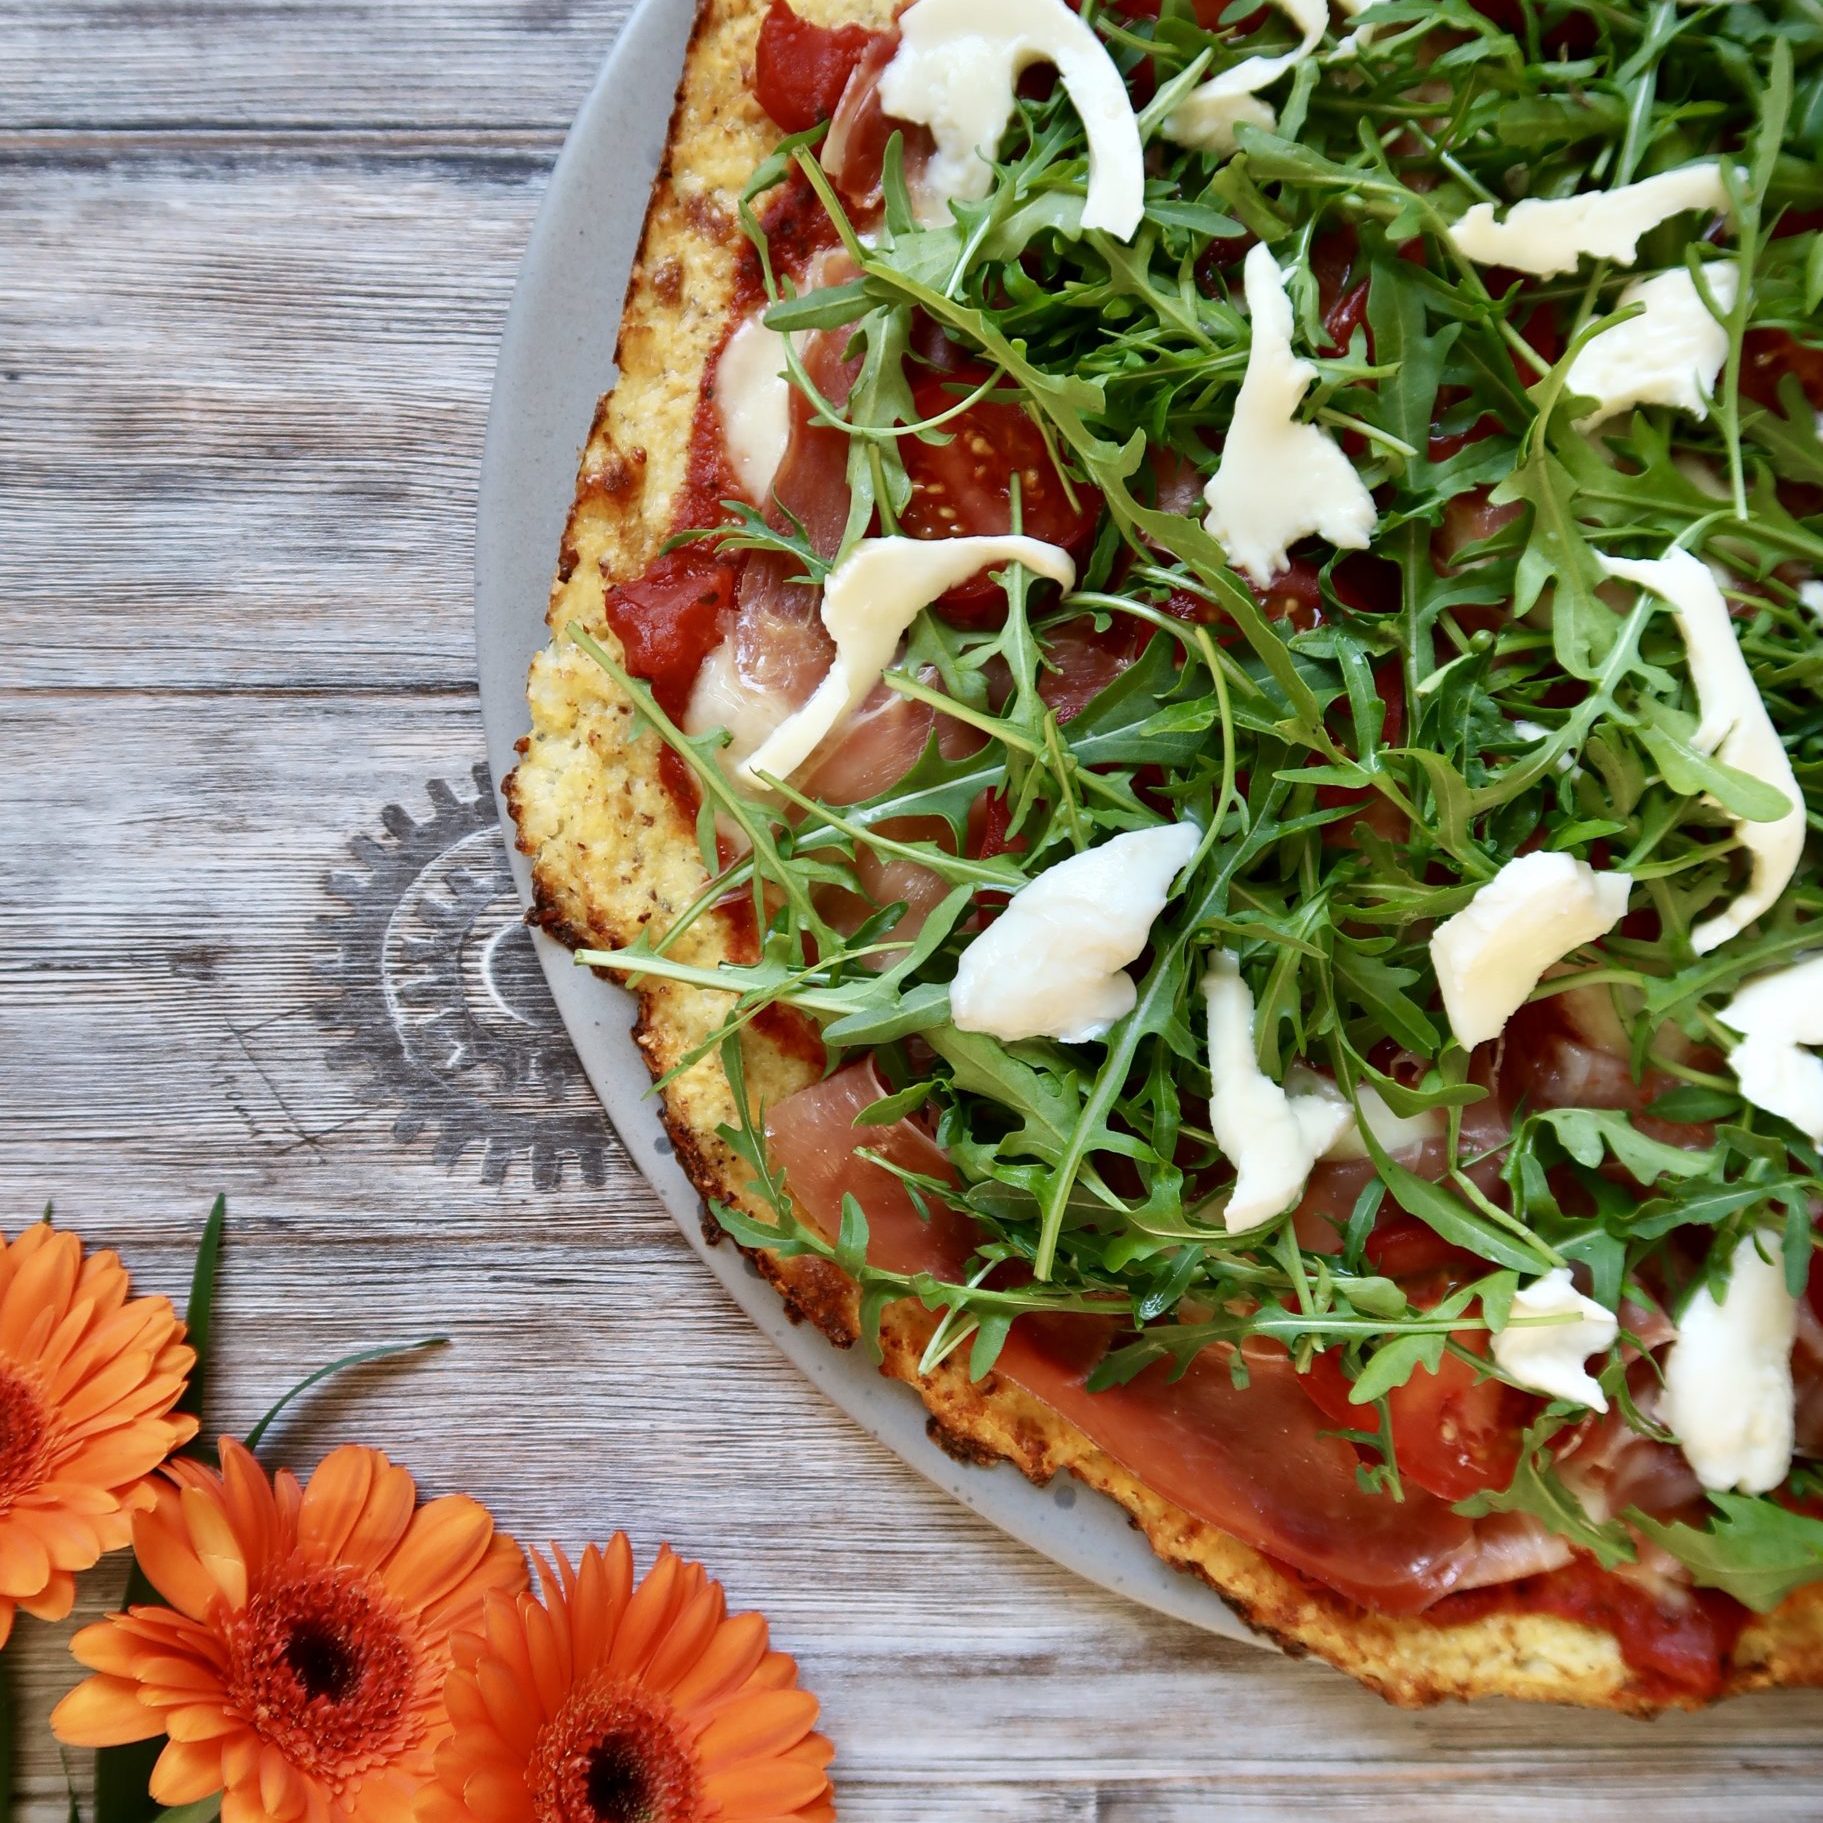 Blomkålspizza med seranoskinke, mozzarella, tomater og rucolasalat